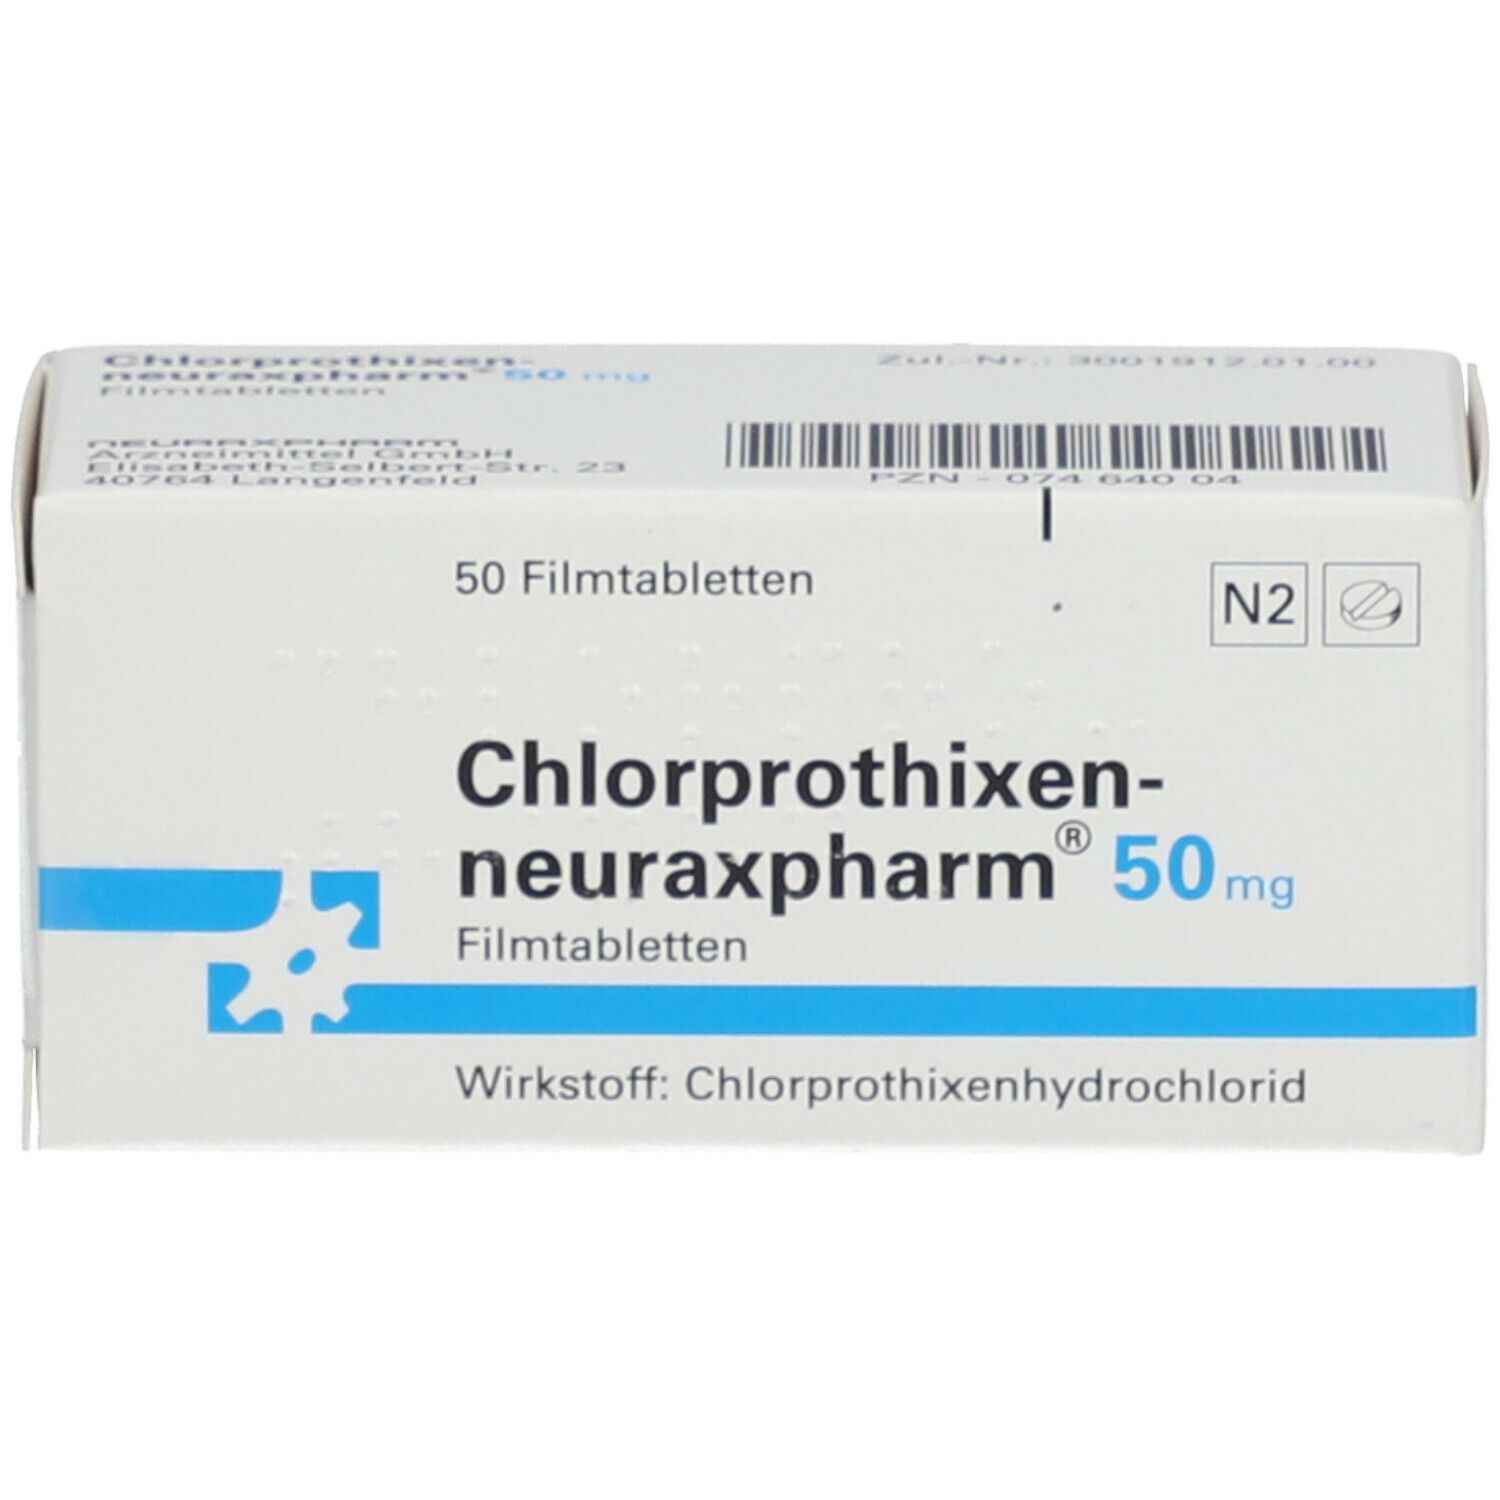 Chlorprothixen-neuraxpharm® 50 mg